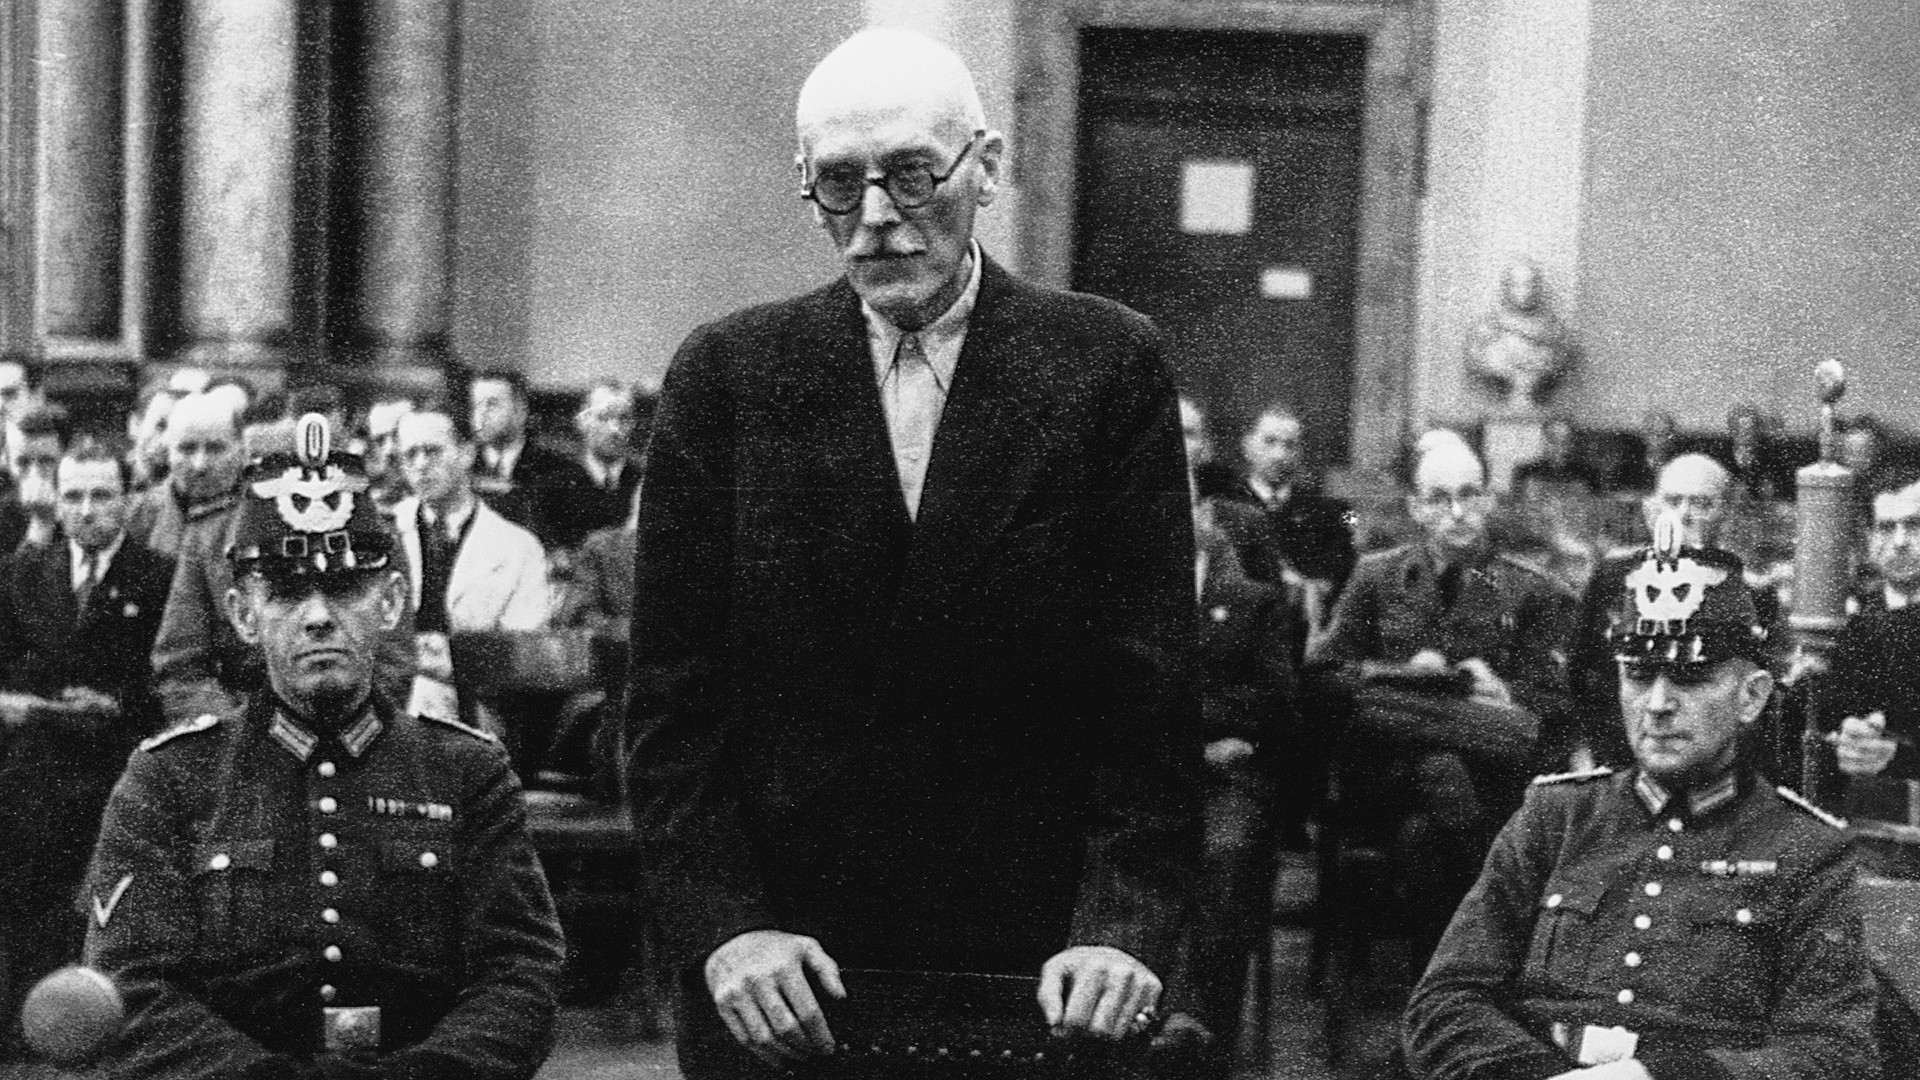 Count von der Schulenburg waiting for his execution in Aug. 1944.